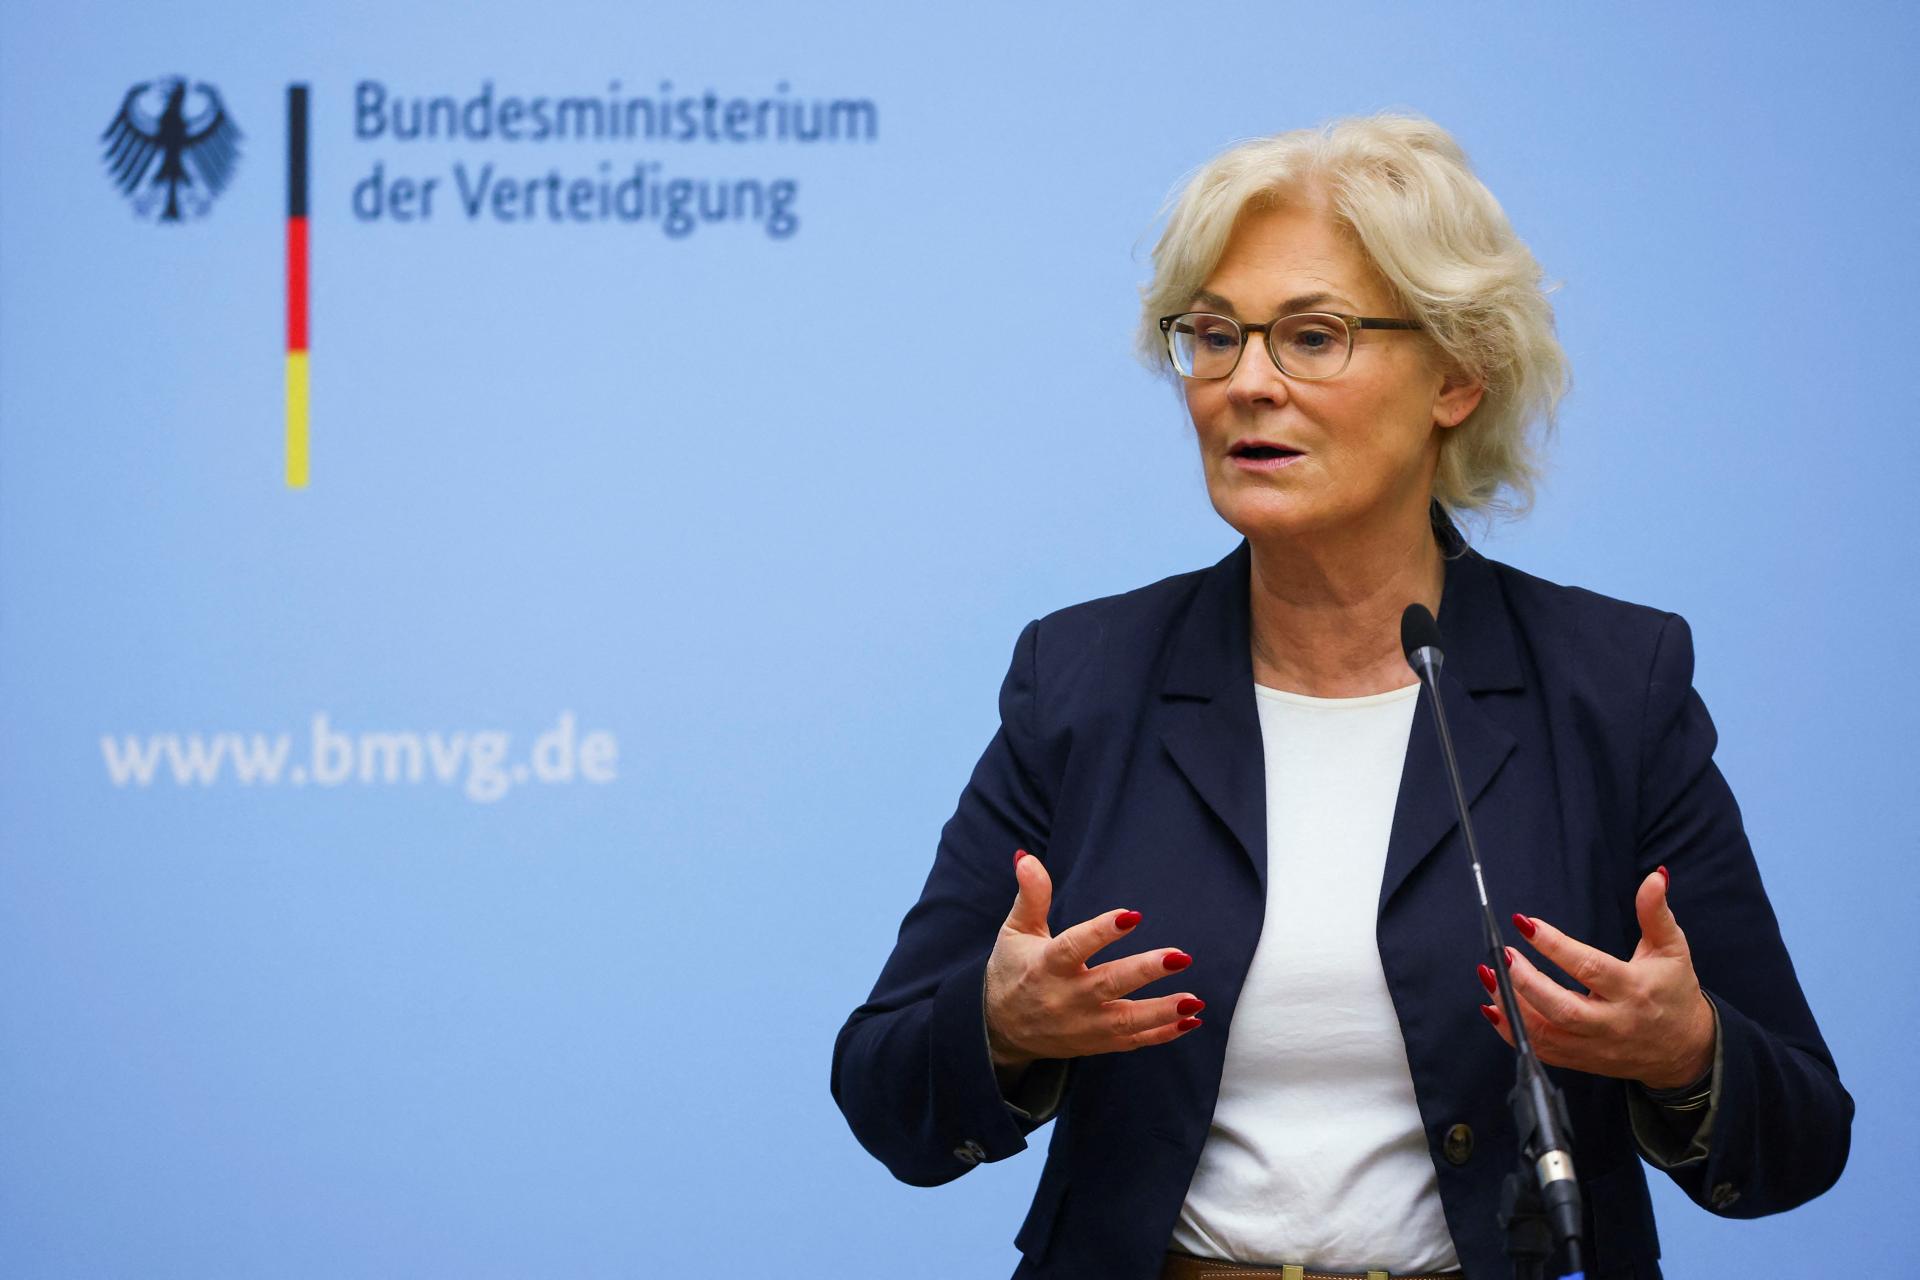 Nemecká ministerka obrany Lambrechtová sa chystá rezignovať. Zápasí s kritikou, píše denník Bild